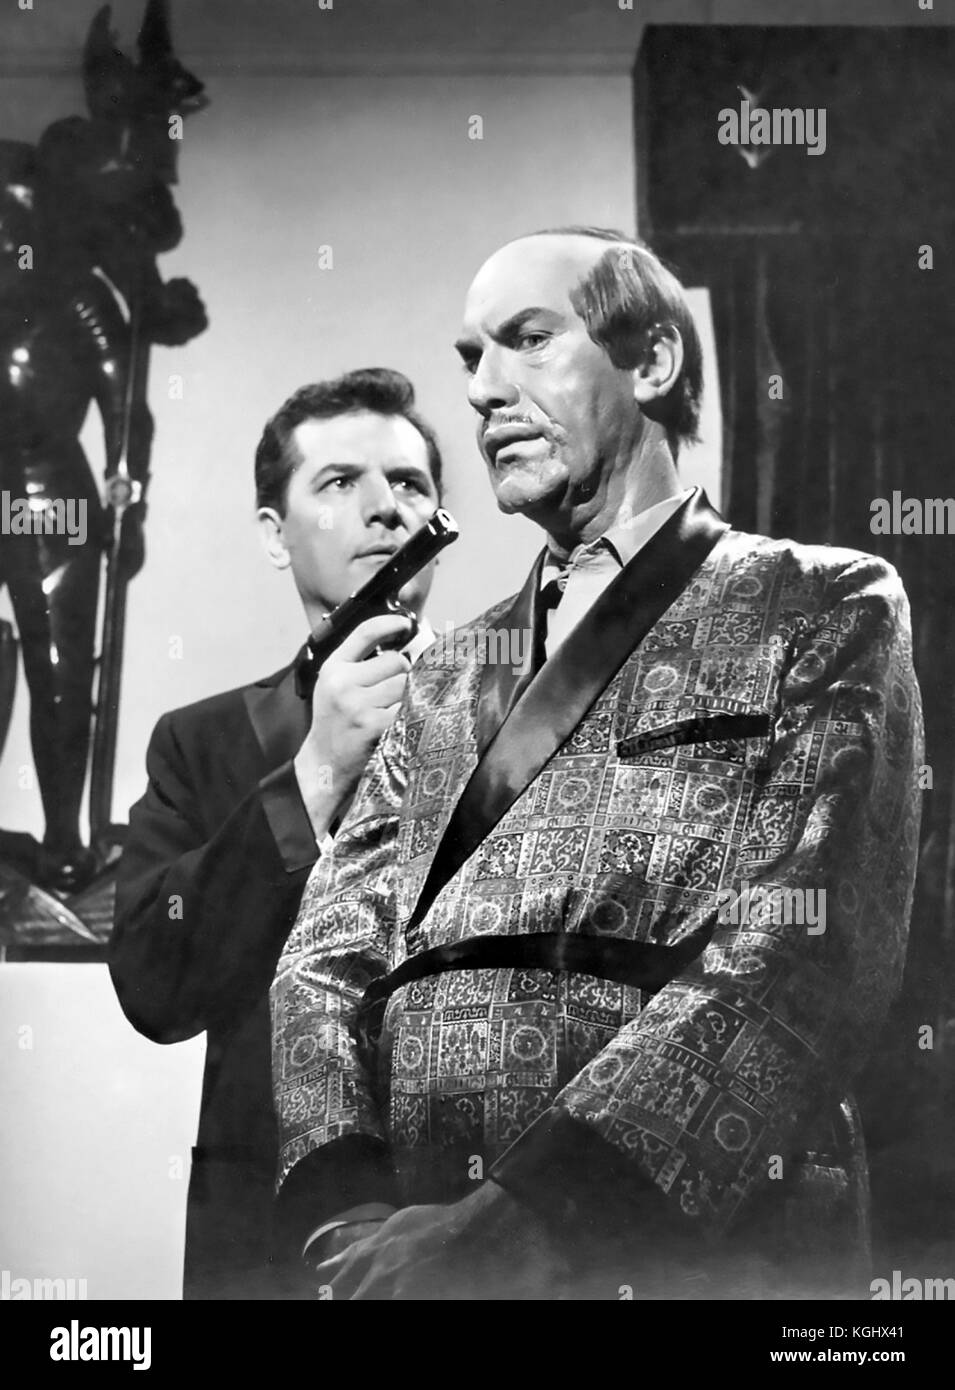 MISSION IMPOSSIBLE CBS TV SÉRIE 1966-1973. Martin Landau à droite et Steven Hill dans le premier épisode projeté le 17 septembre 1966 Banque D'Images